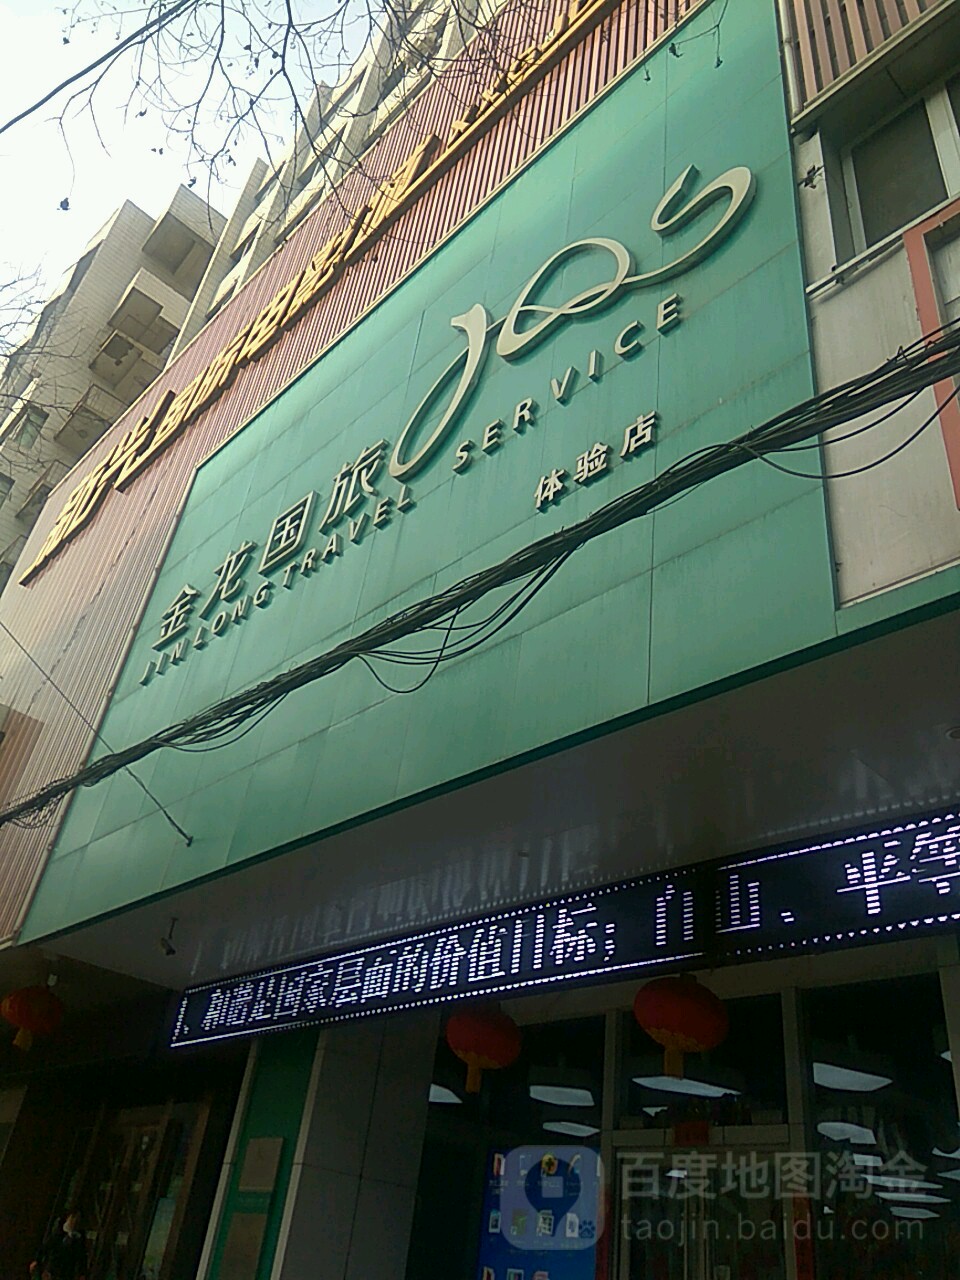 金龍國旅體驗店